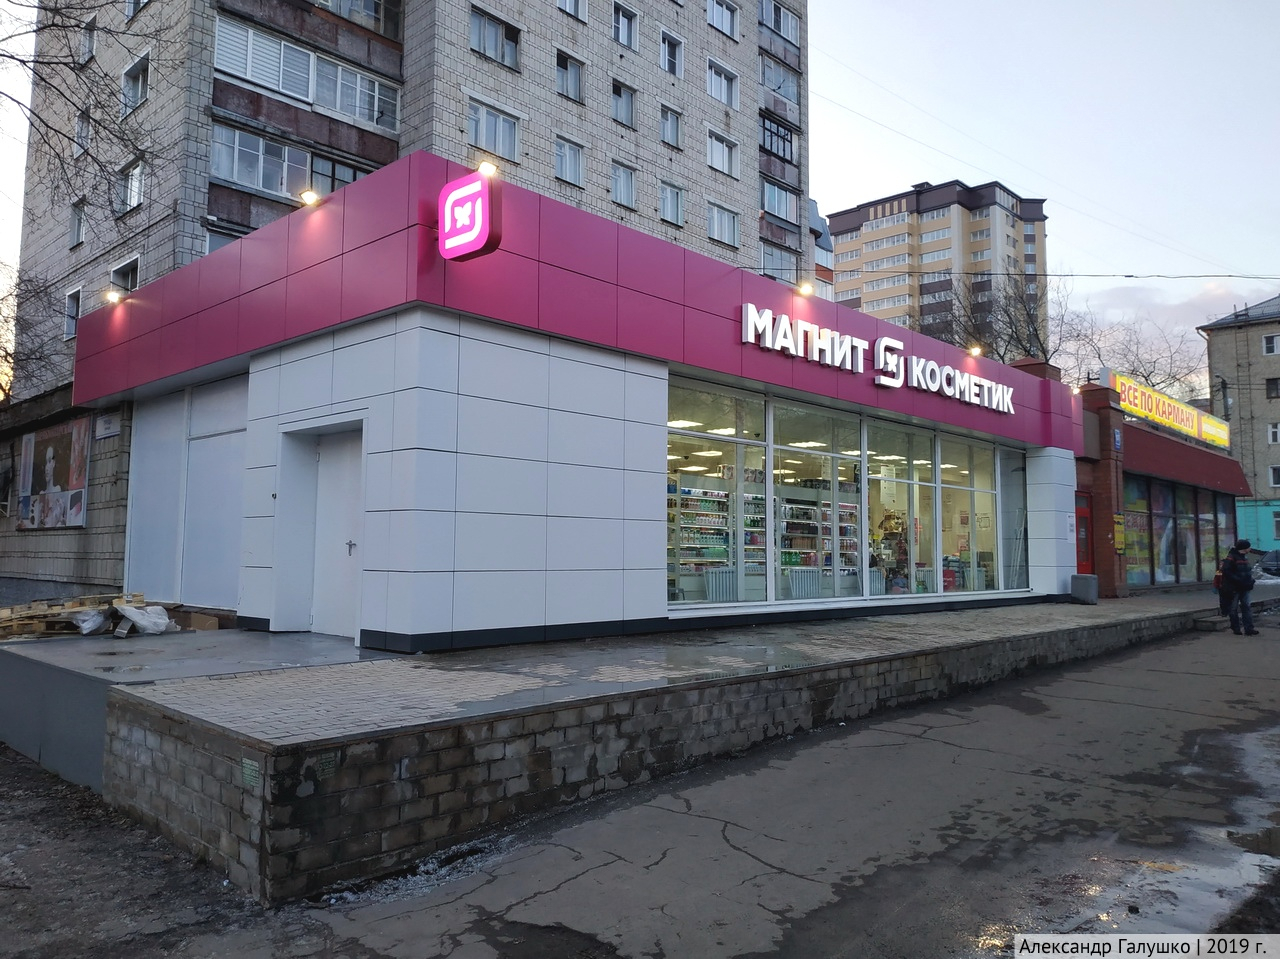 Одну из крупных торговых сетей в Кирове ждет ребрендинг